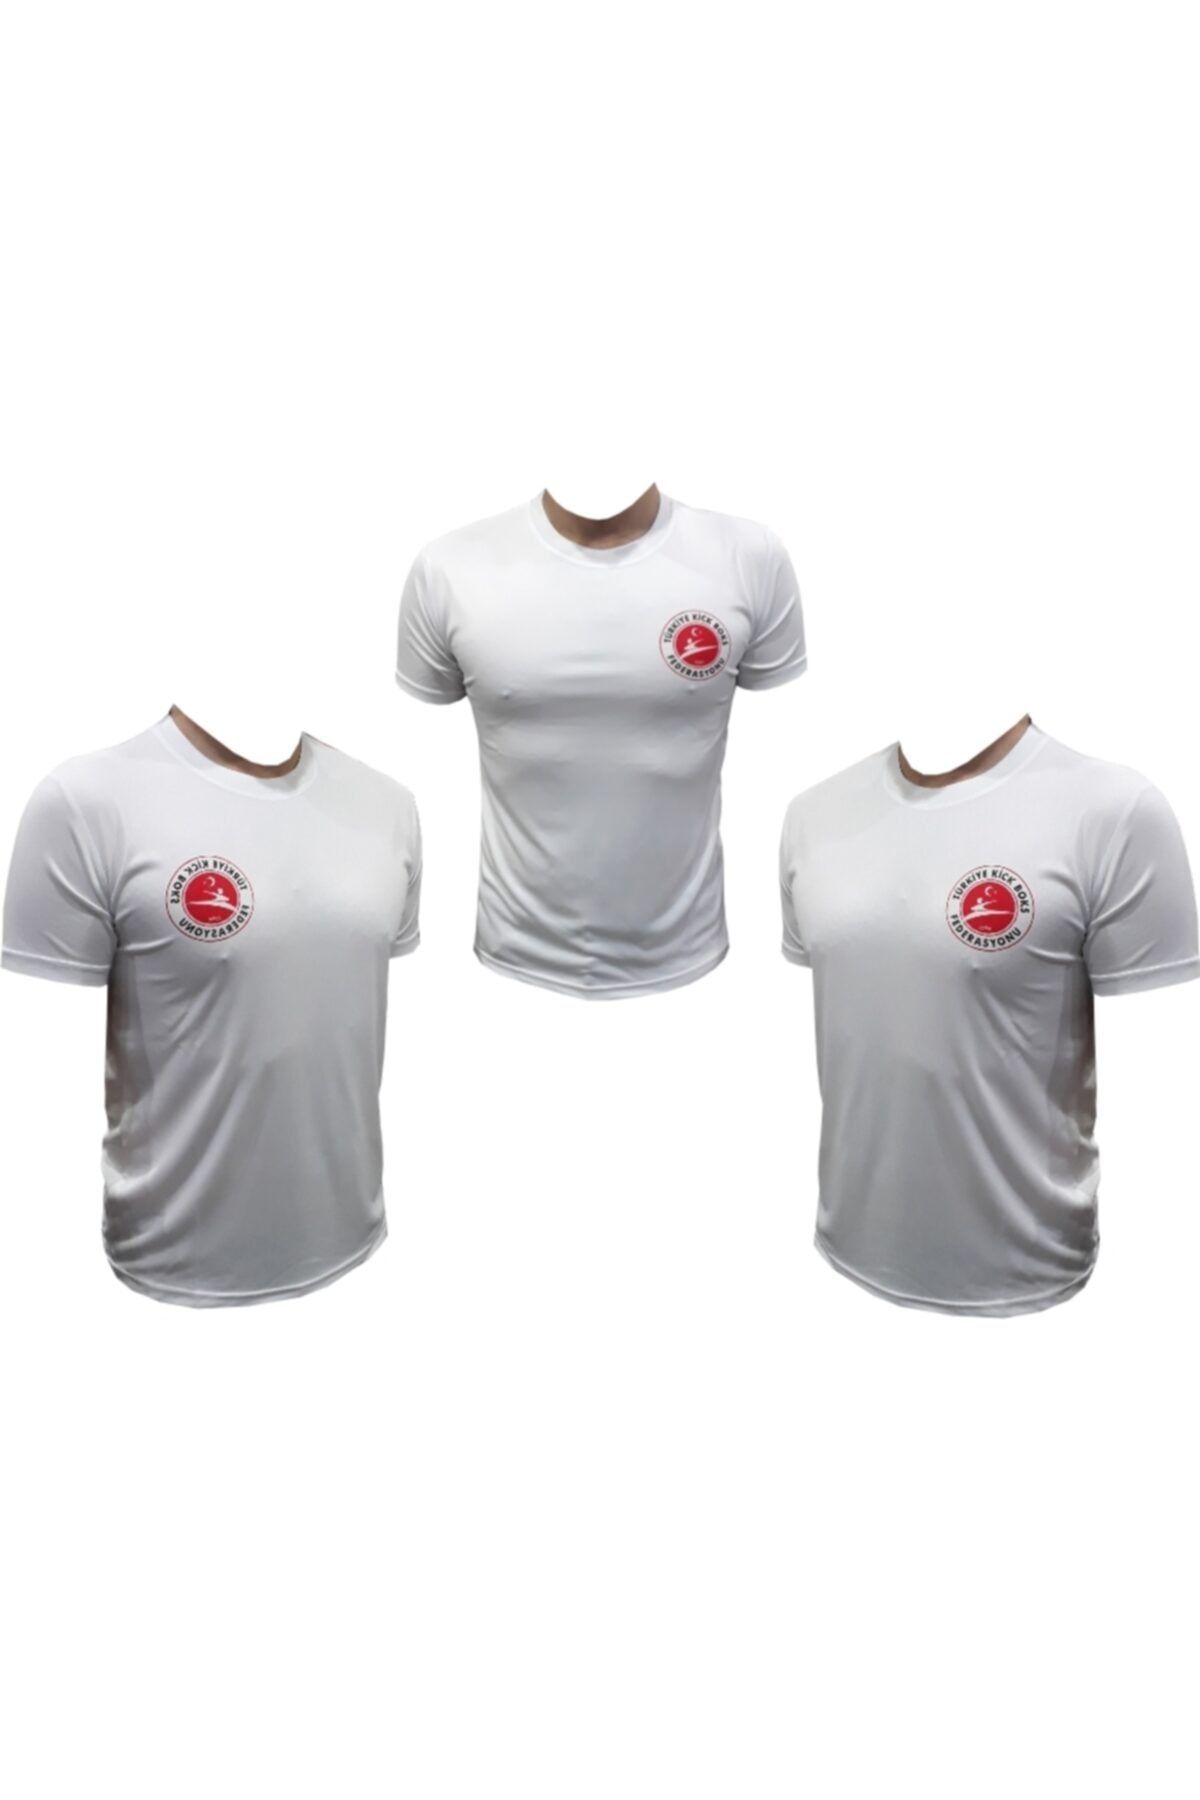 YiğitSpor Kickboks Tişörtü & Kıckboks Tişört & Kıck Boks Tişörtü